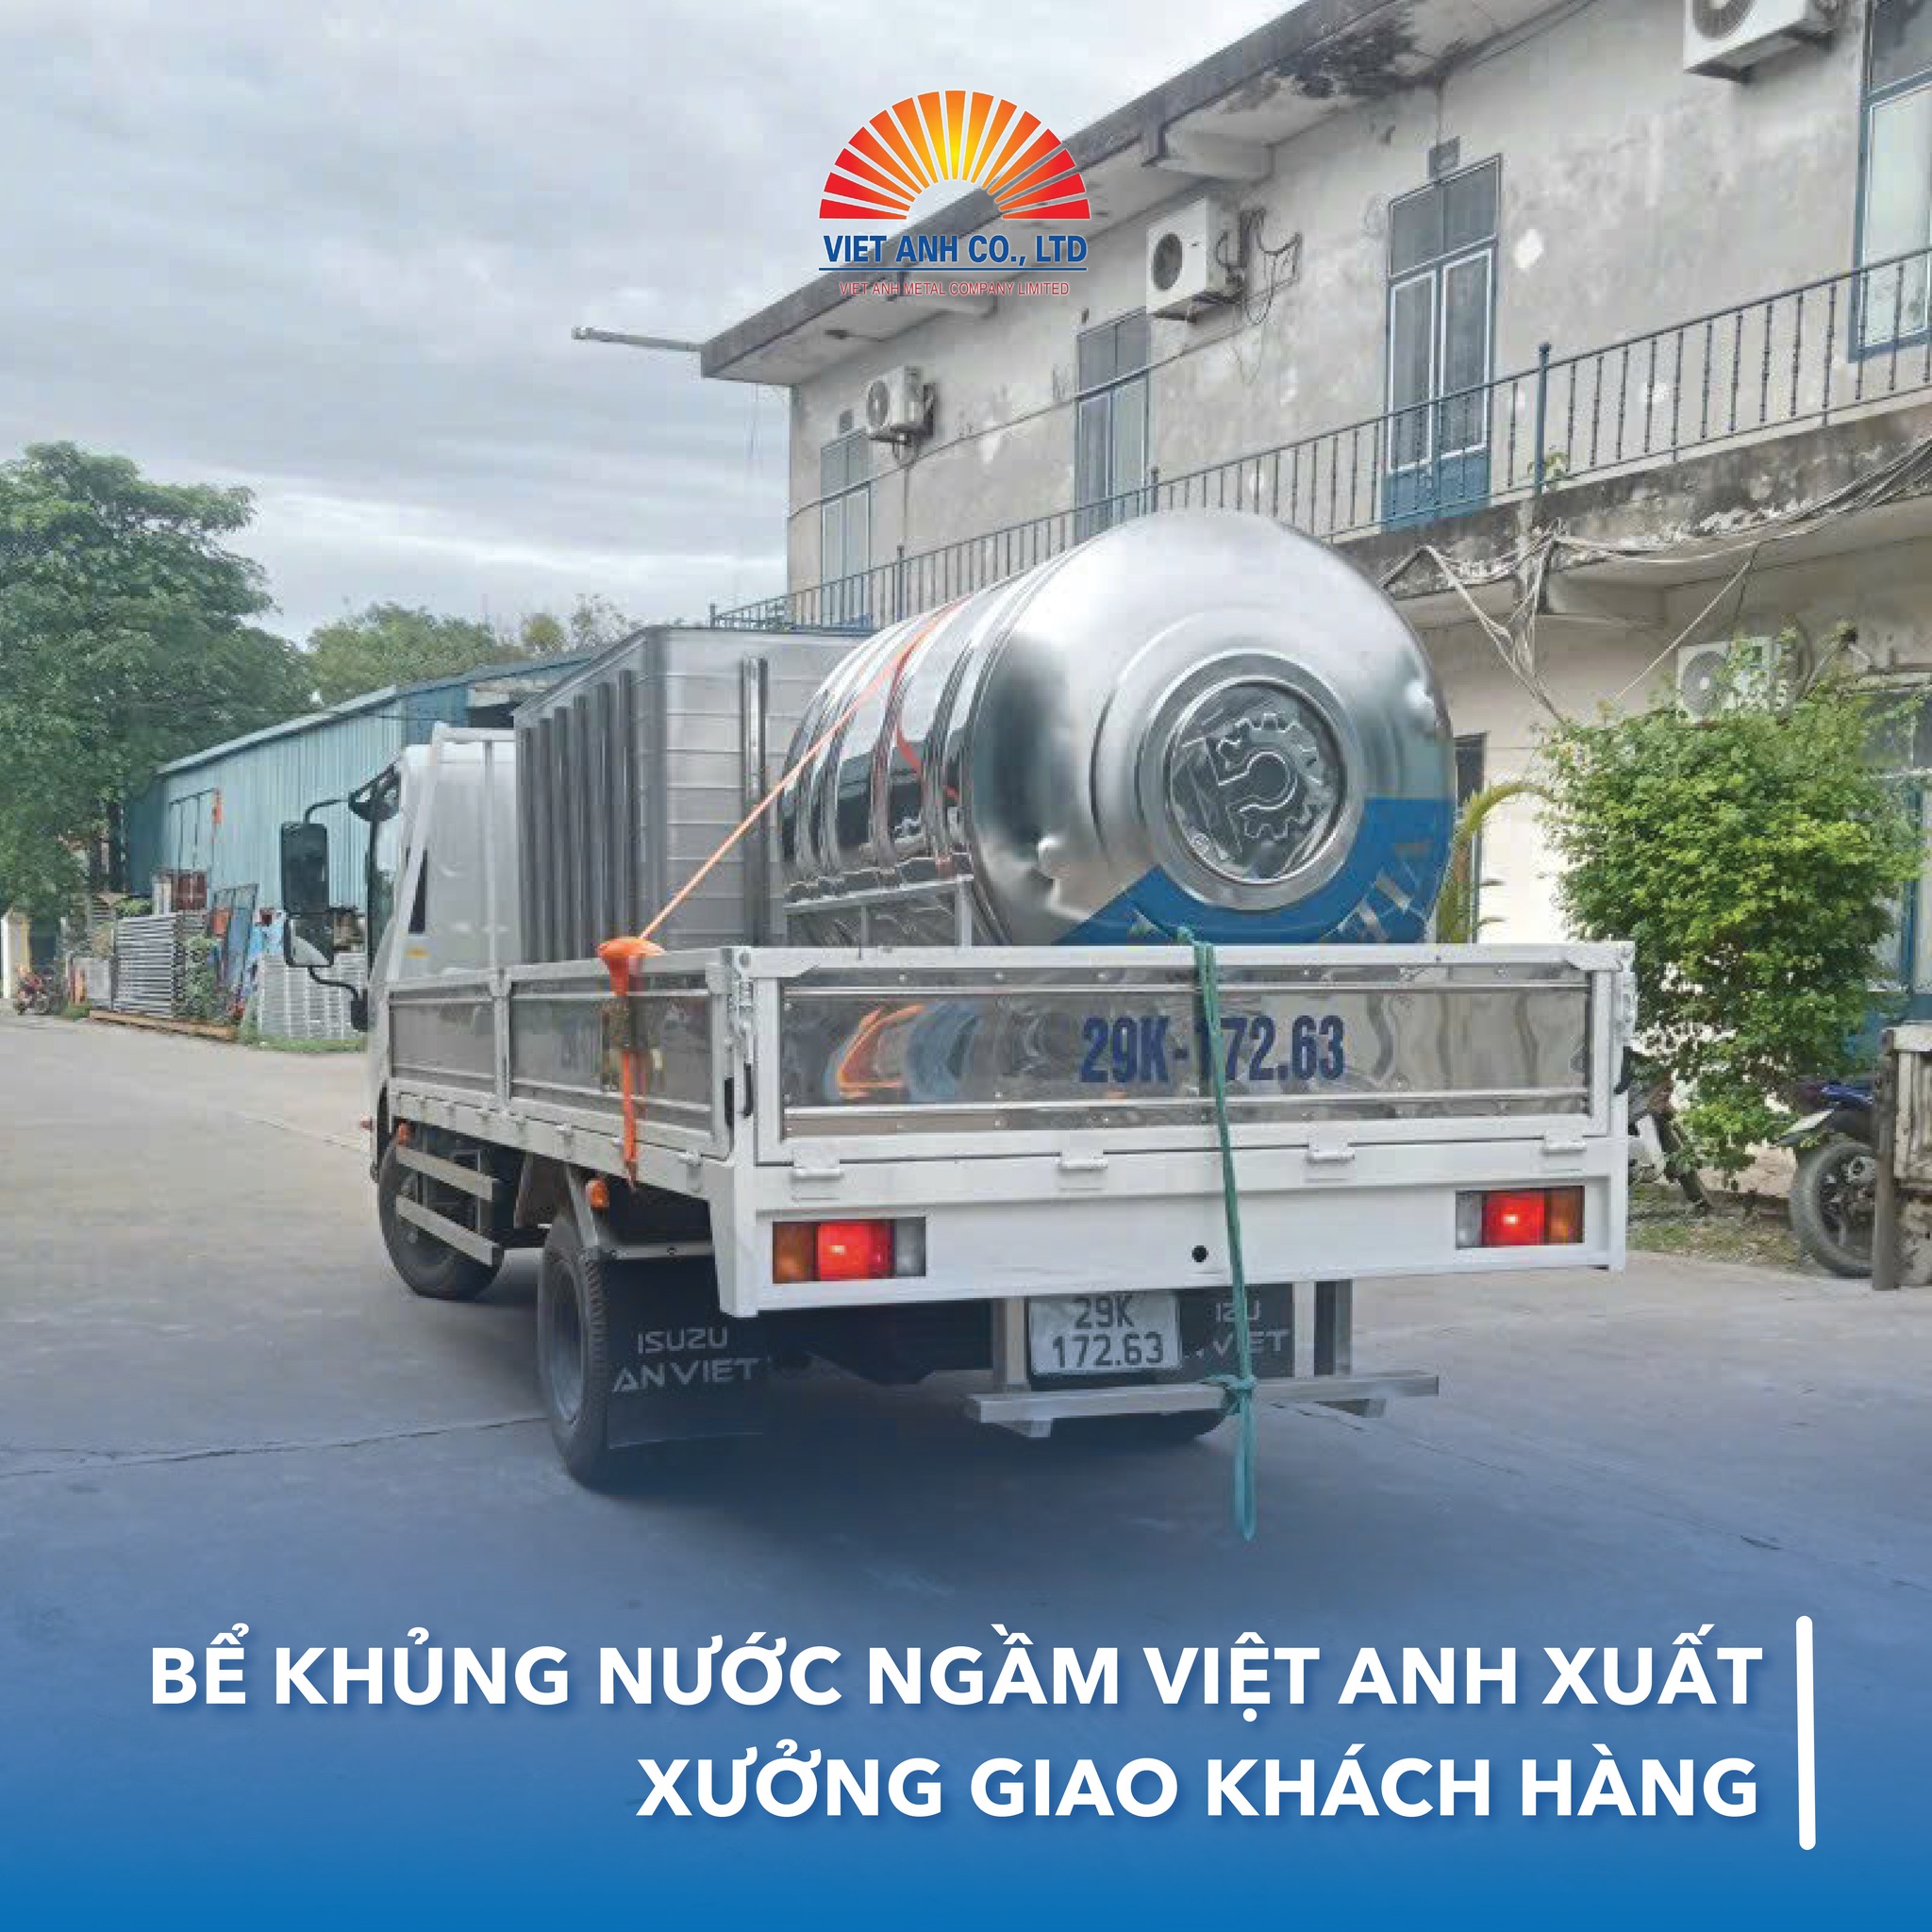 Bể khủng nước ngầm inox Việt Anh xuất xưởng, giao khách hàng thành công